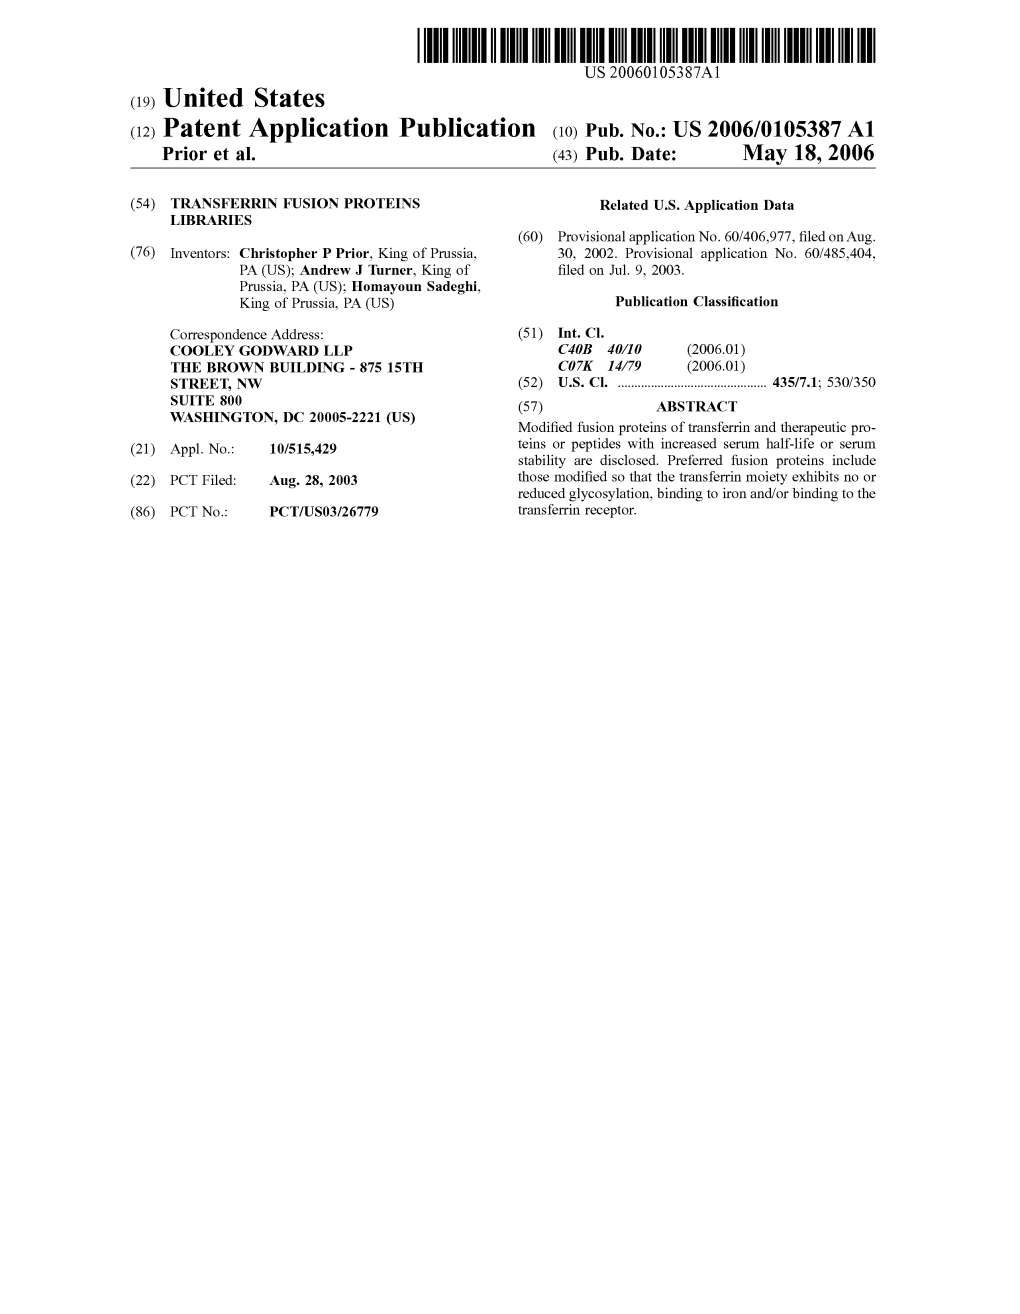 (12) Patent Application Publication (10) Pub. No.: US 2006/0105387 A1 Prior Et Al